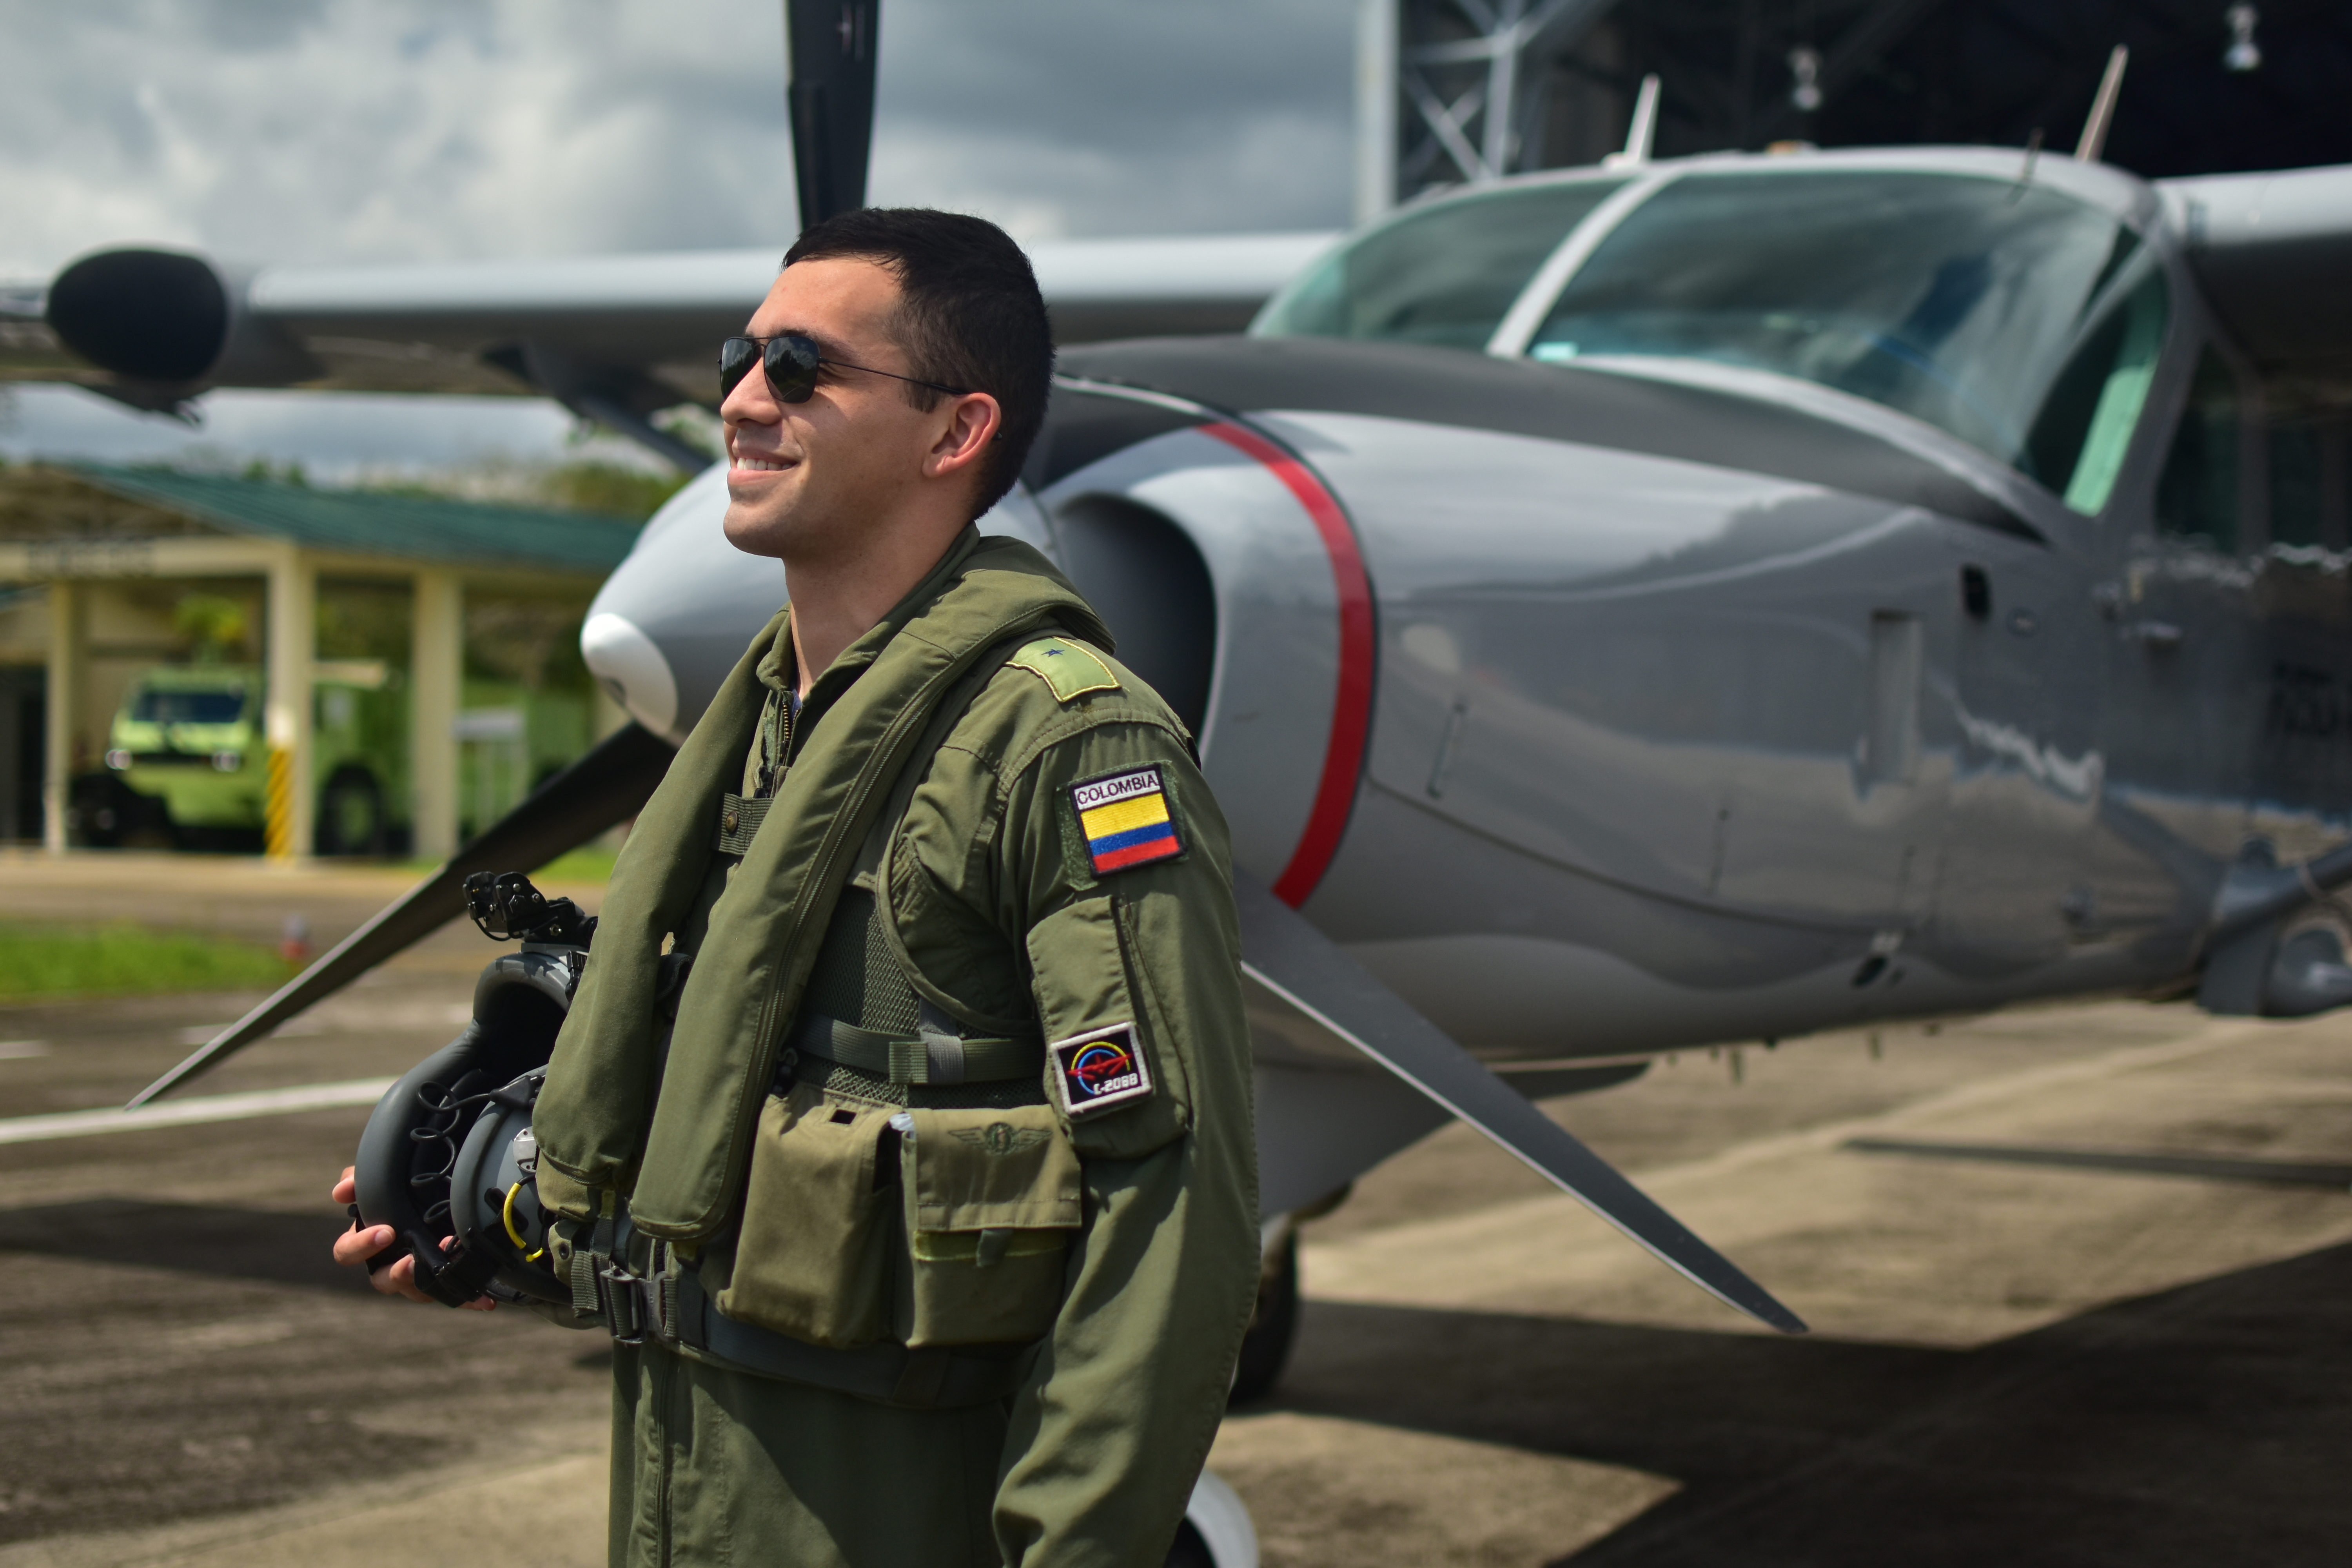 Piloto Militar, una profesión de valor | Fuerza Aérea Colombiana